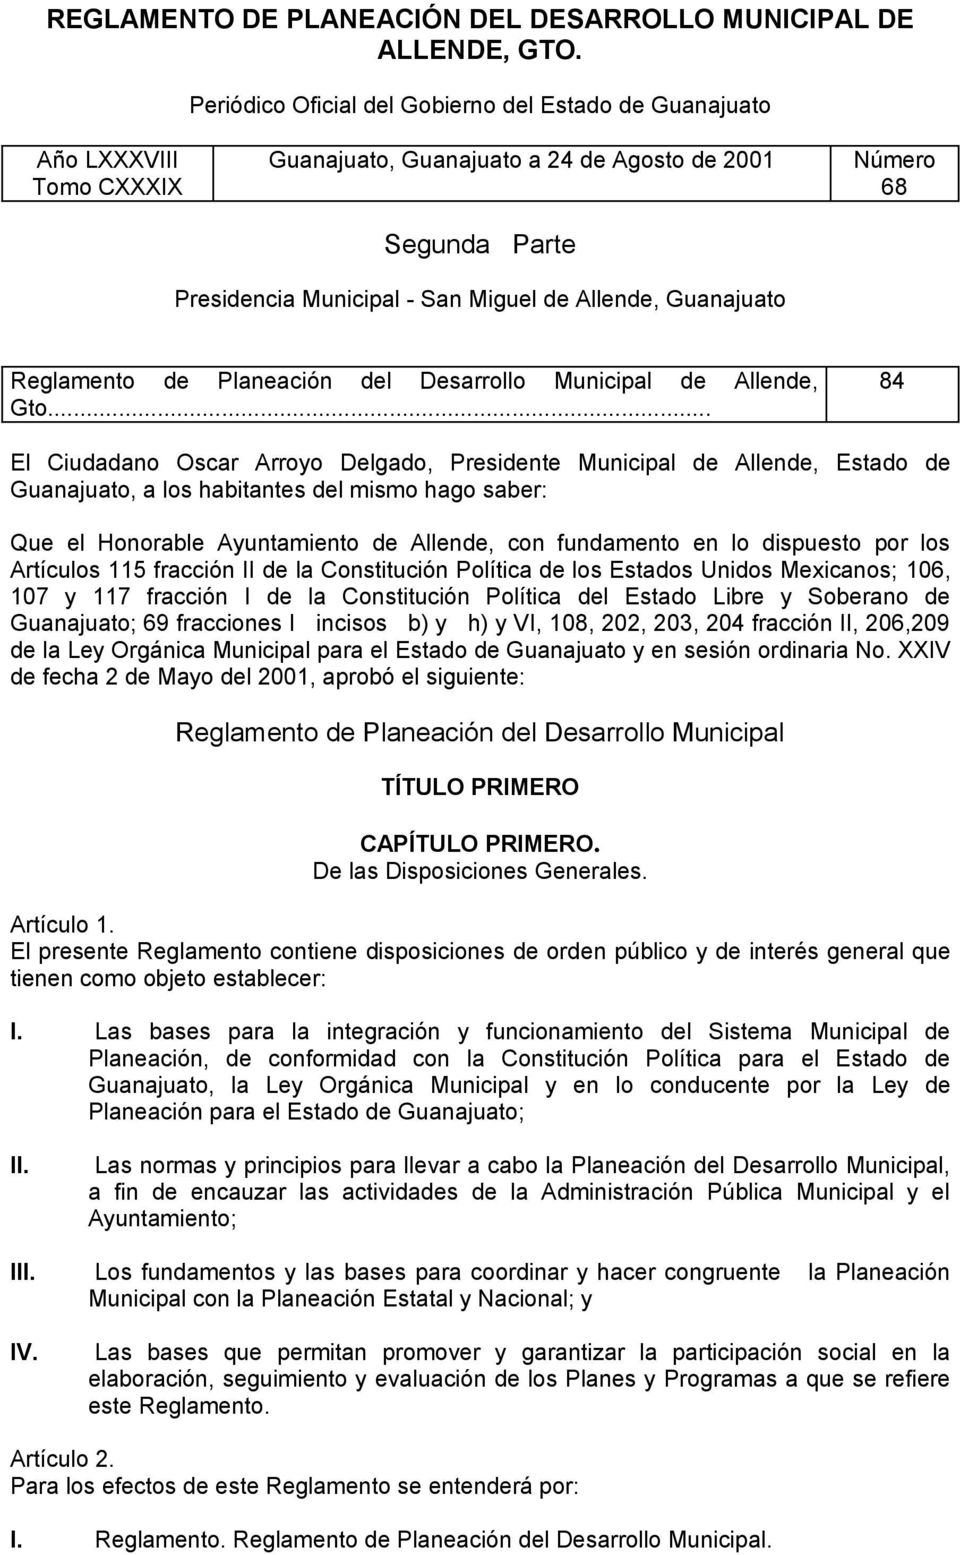 Guanajuato Reglamento de Planeación del Desarrollo Municipal de Allende, Gto.